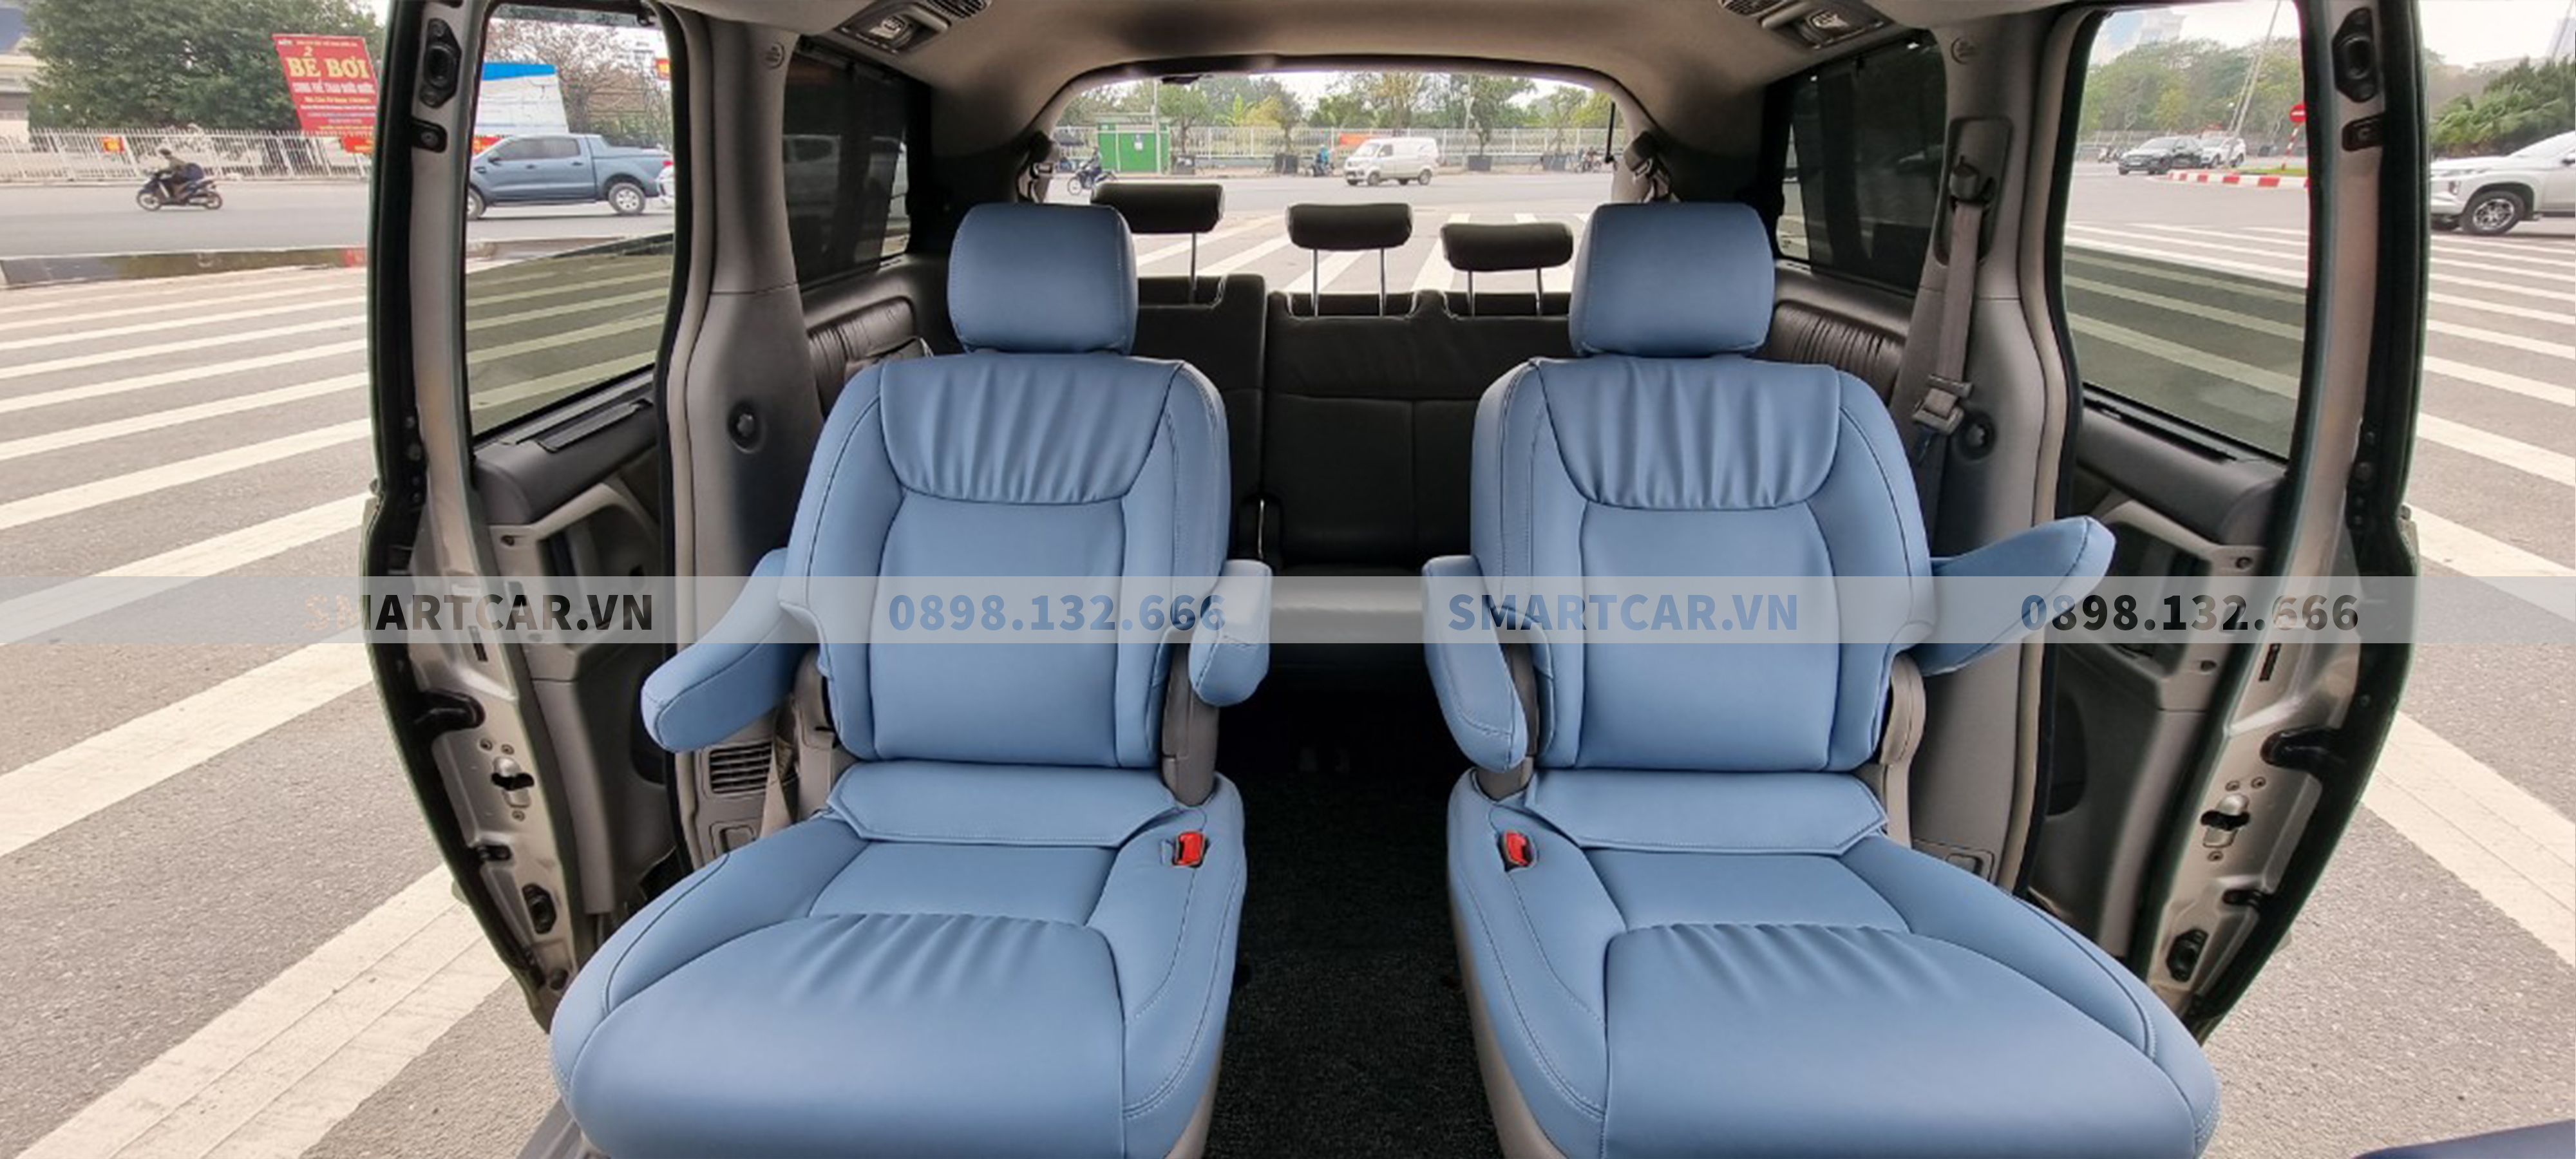 Bọc ghế da Toyota Sienna màu xanh